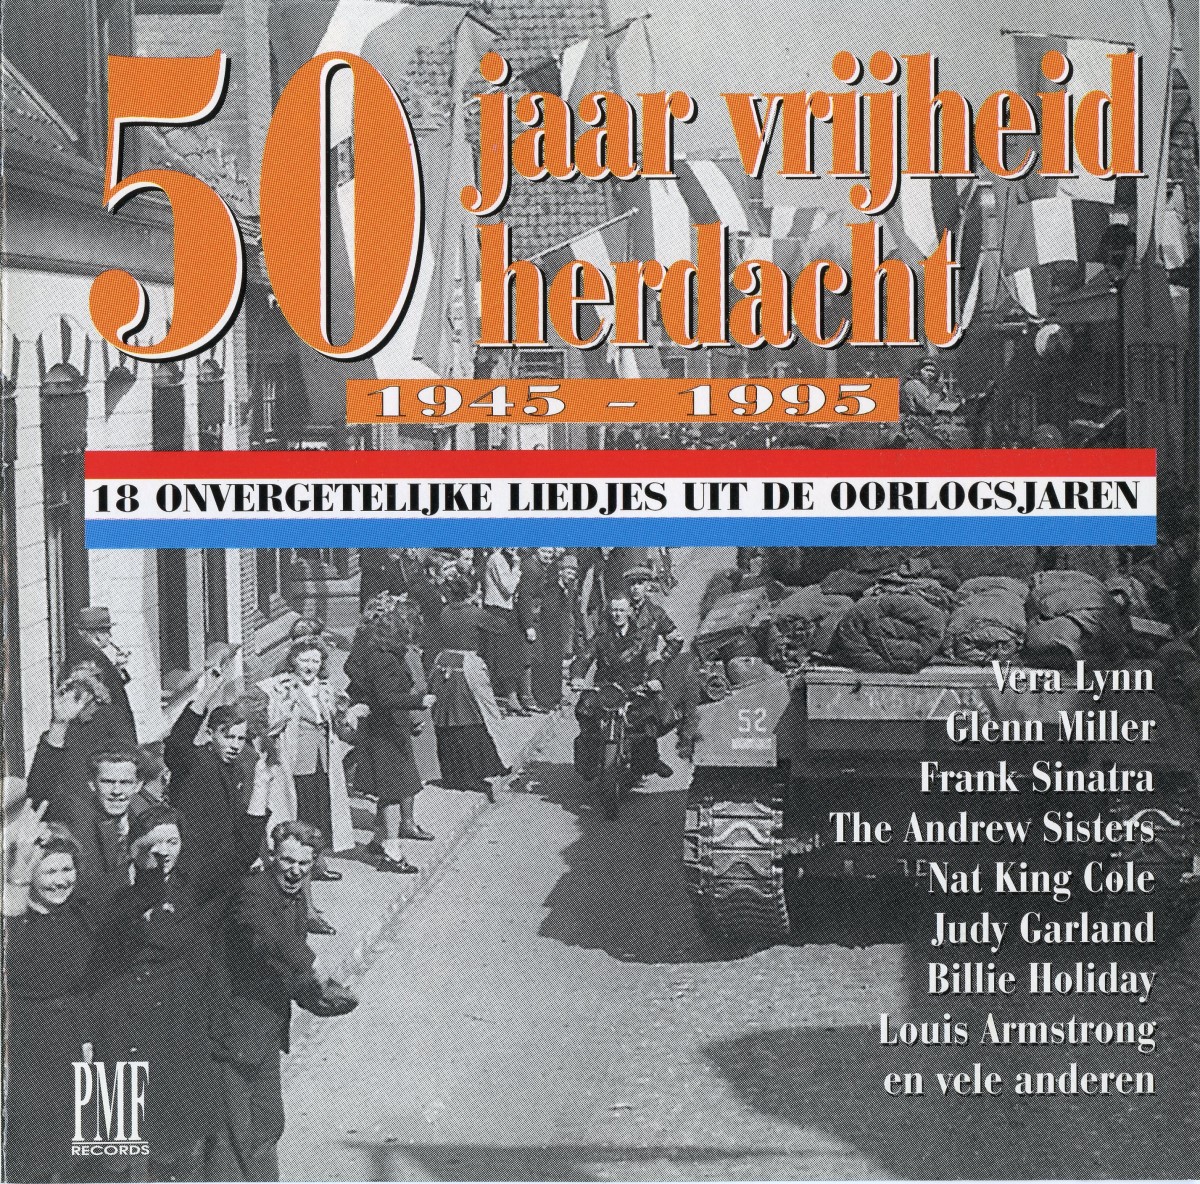 50 Jaar Vrijheid Herdacht (1945-1995); 18 onvergetelijke leidjes uit de oorlogsjaren - FLAC + MP3